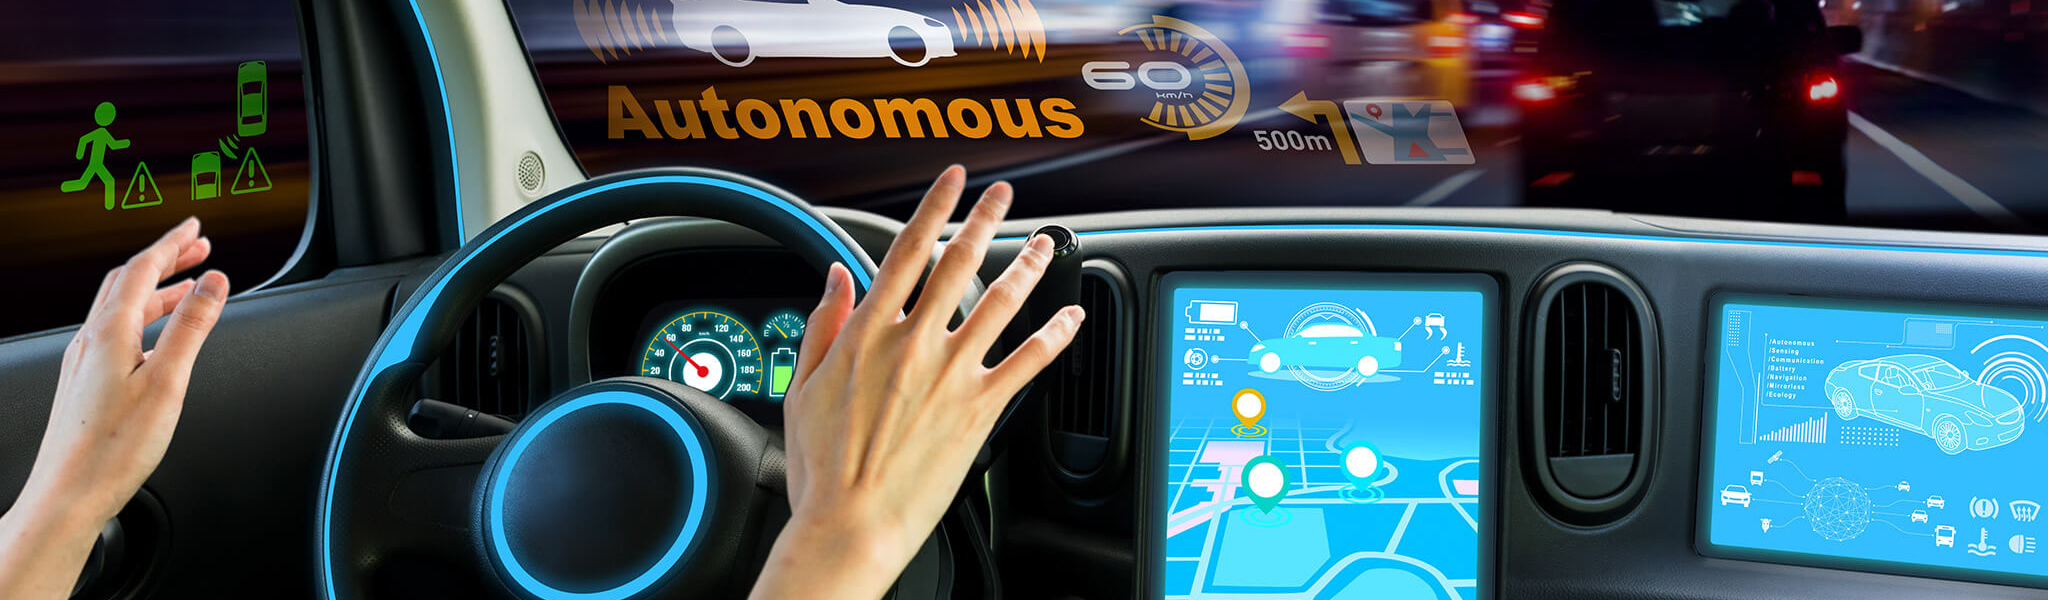 Autonomes Fahren, selbstfahrendes Auto, Haende weg vom Steuer